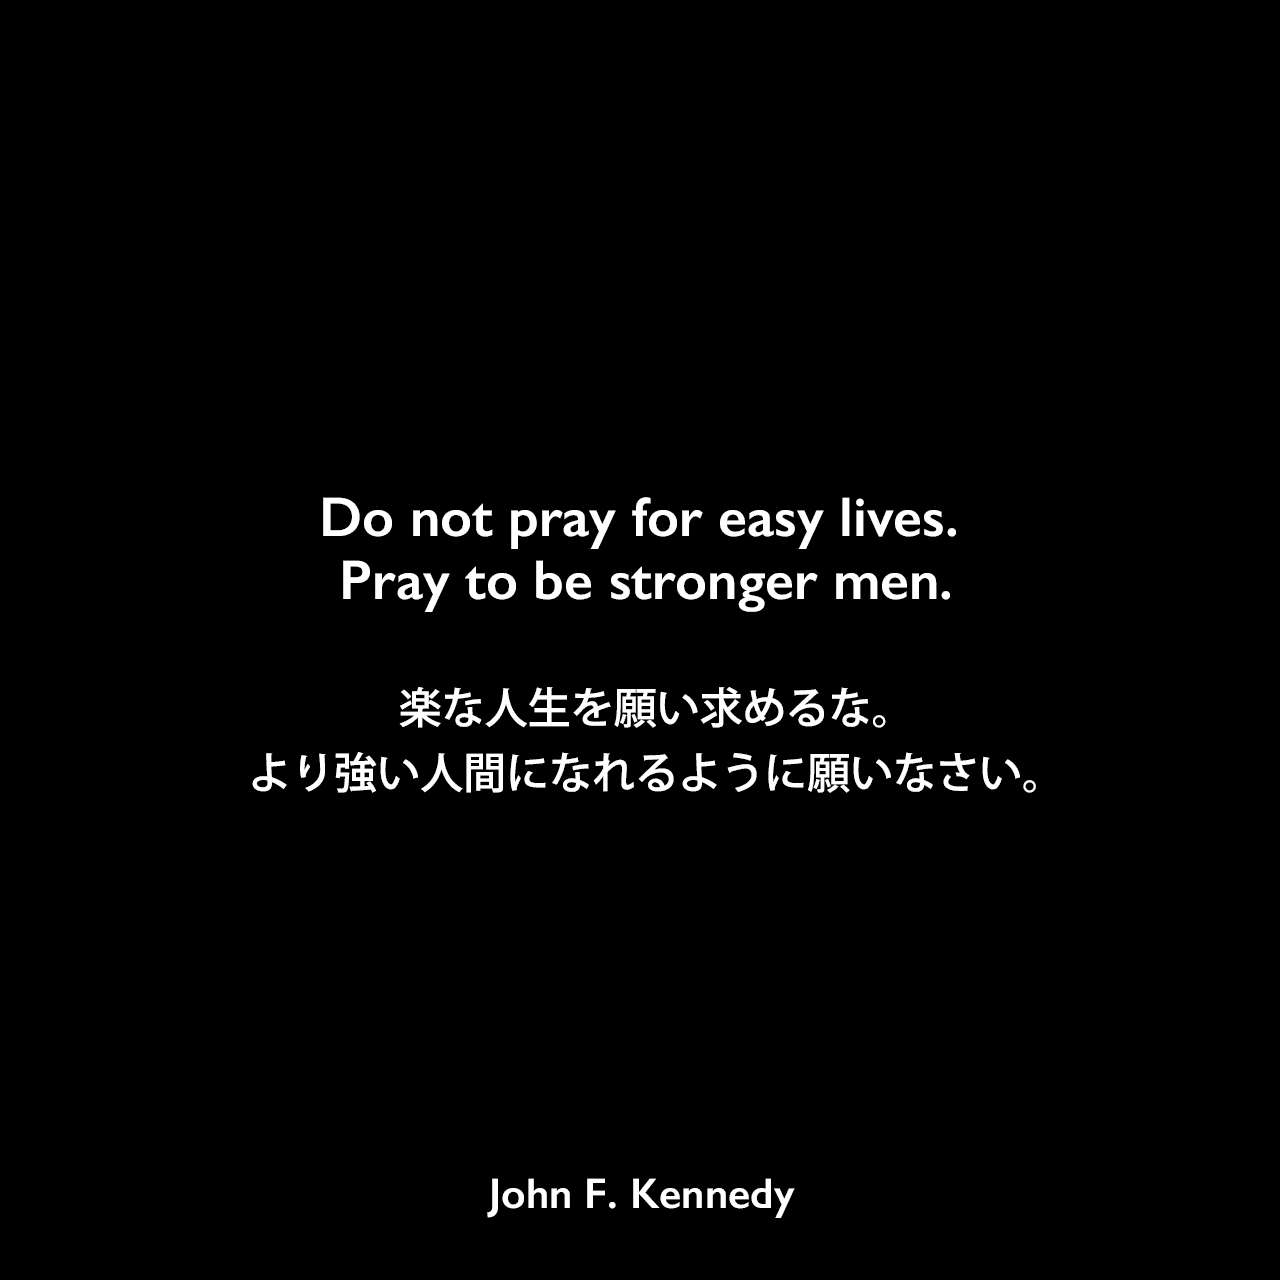 Do not pray for easy lives. Pray to be stronger men.楽な人生を願い求めるな。より強い人間になれるように願いなさい。John F Kennedy